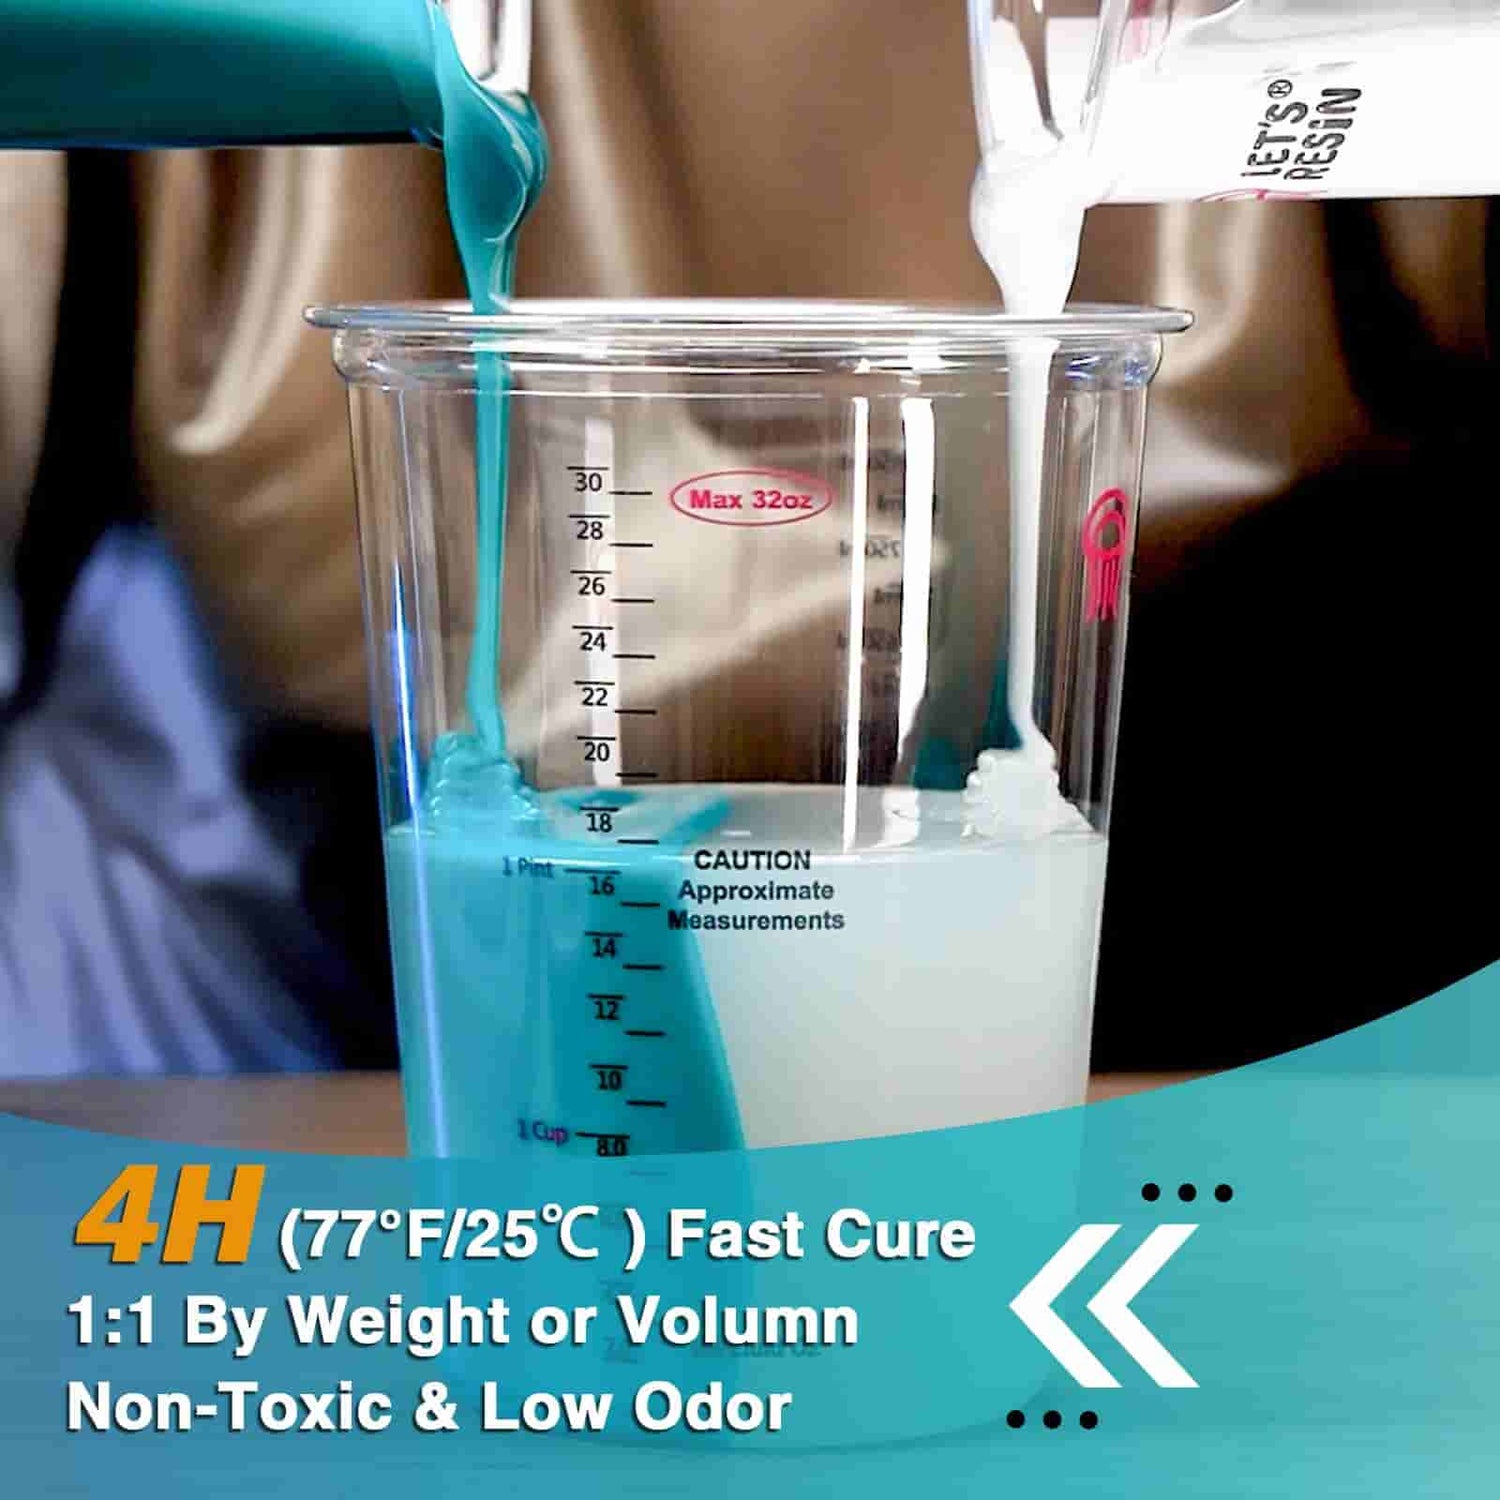 10A Liquid Silicone Rubber (Teal) - 5.4kg/192oz